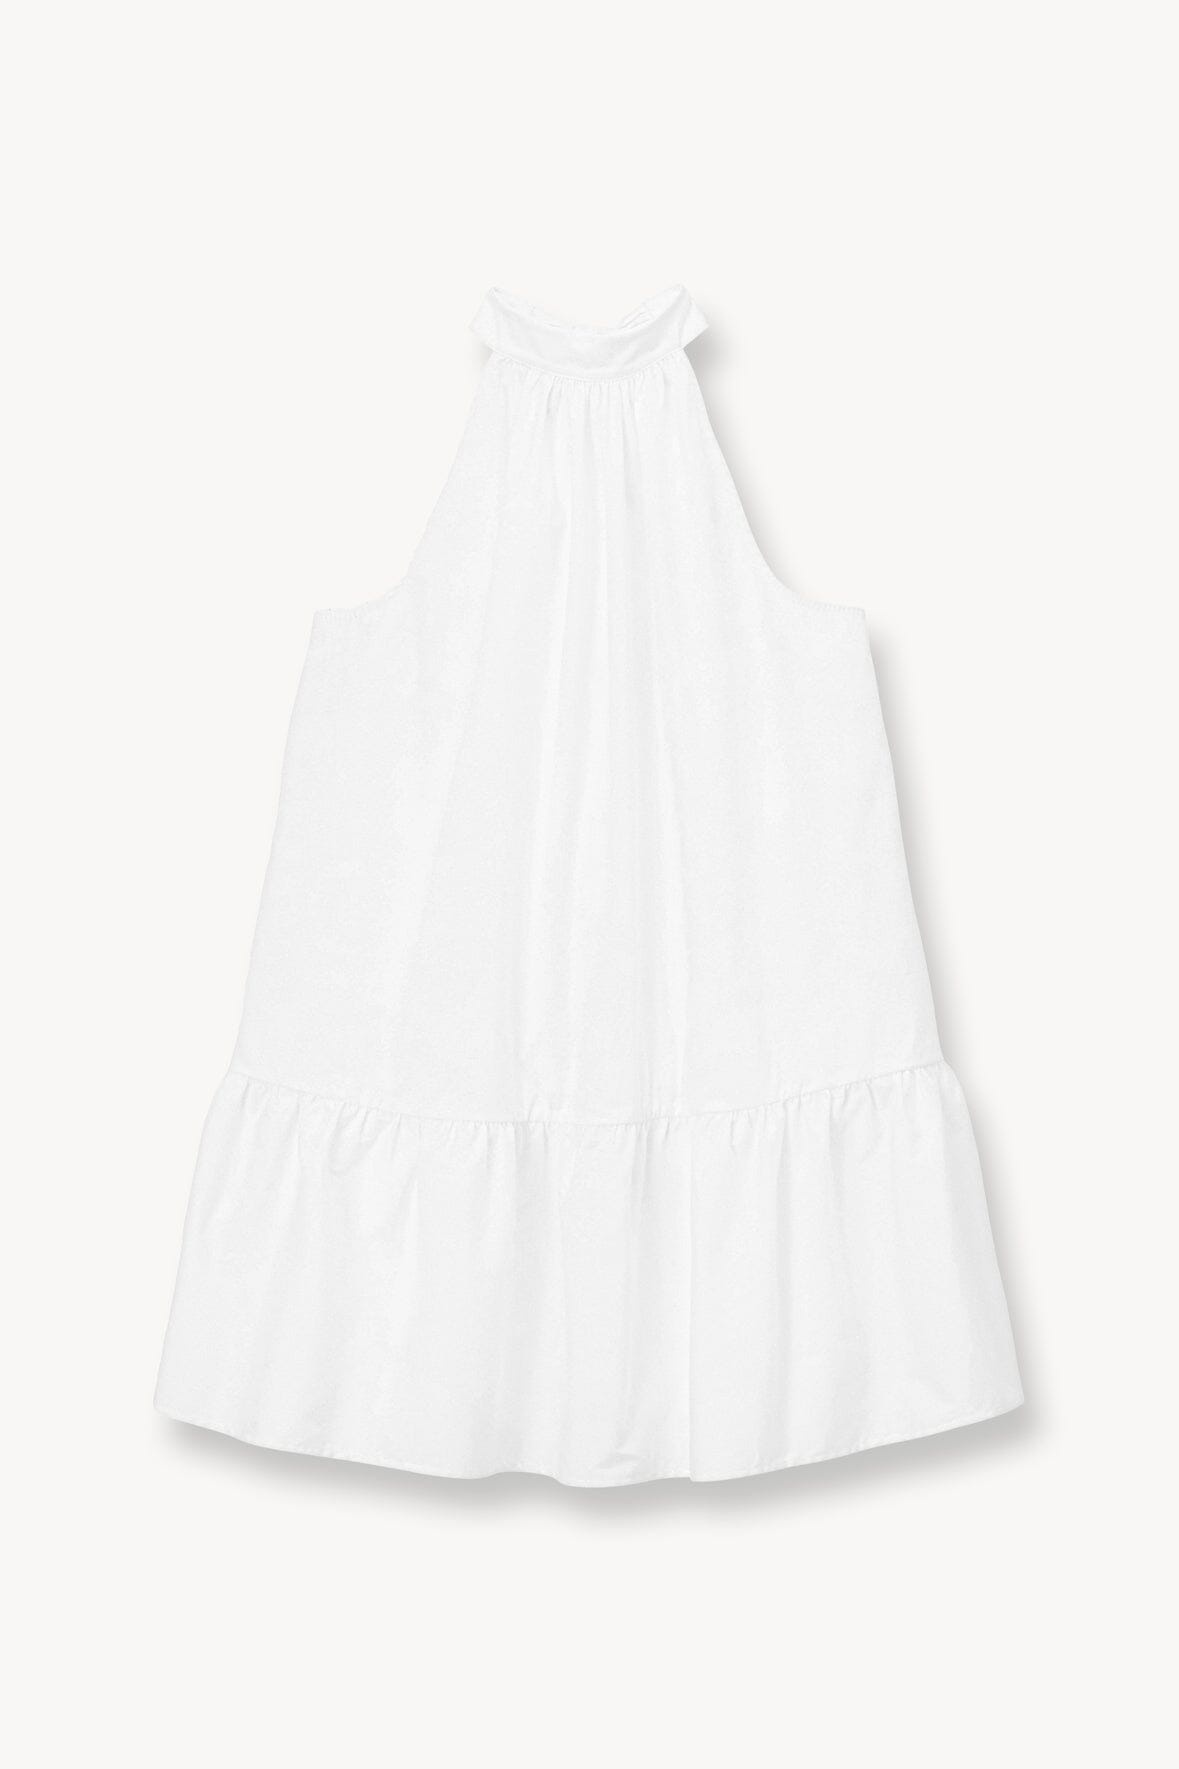 STAUD MARLOWE DRESS WHITE - 1